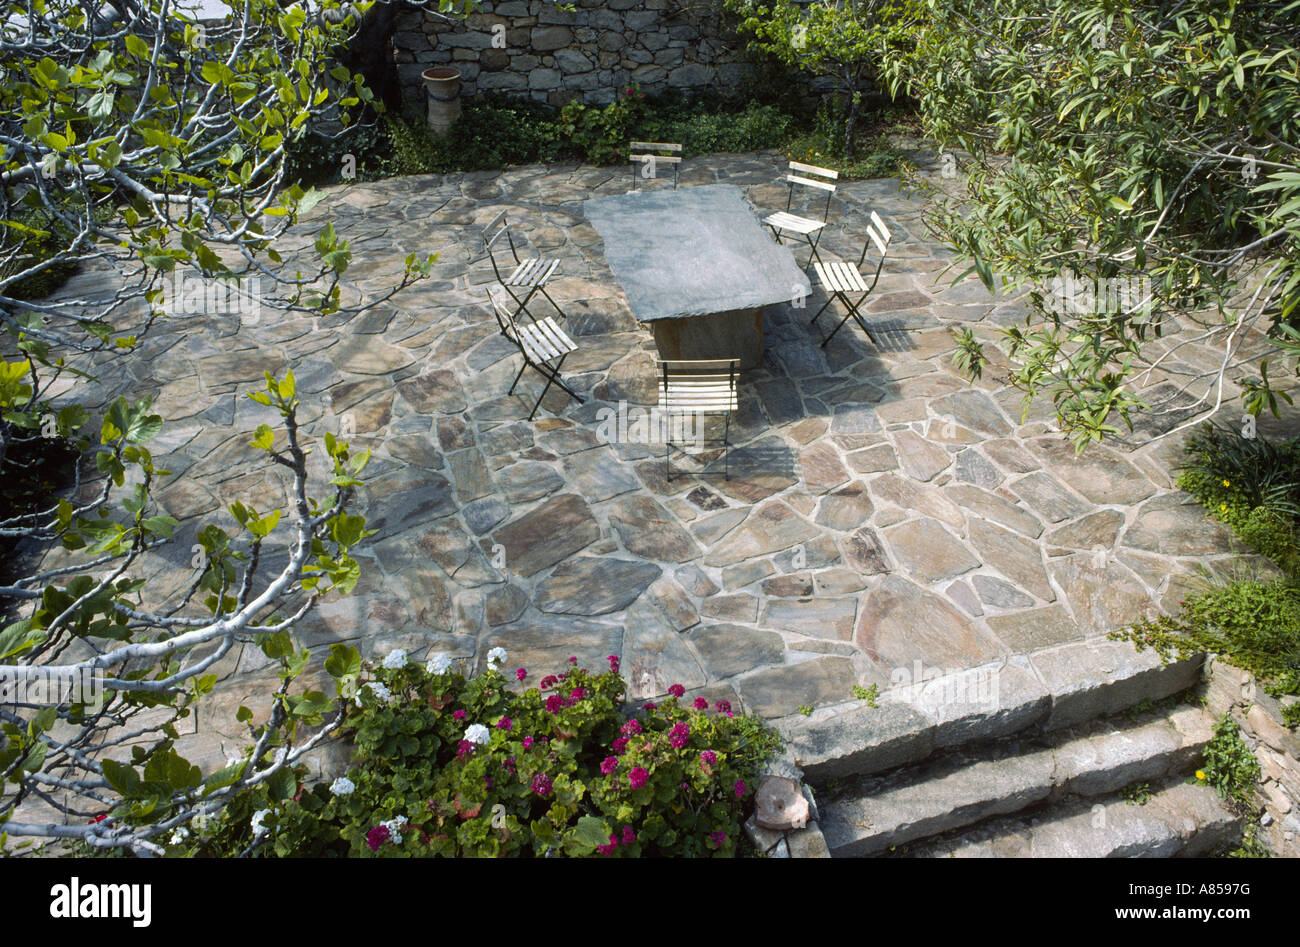 Terrasse, Stühle mit Schiefer Tisch im Garten in Ikaria, Griechenland (Schuss auf Kodachrome 64) Stockfoto